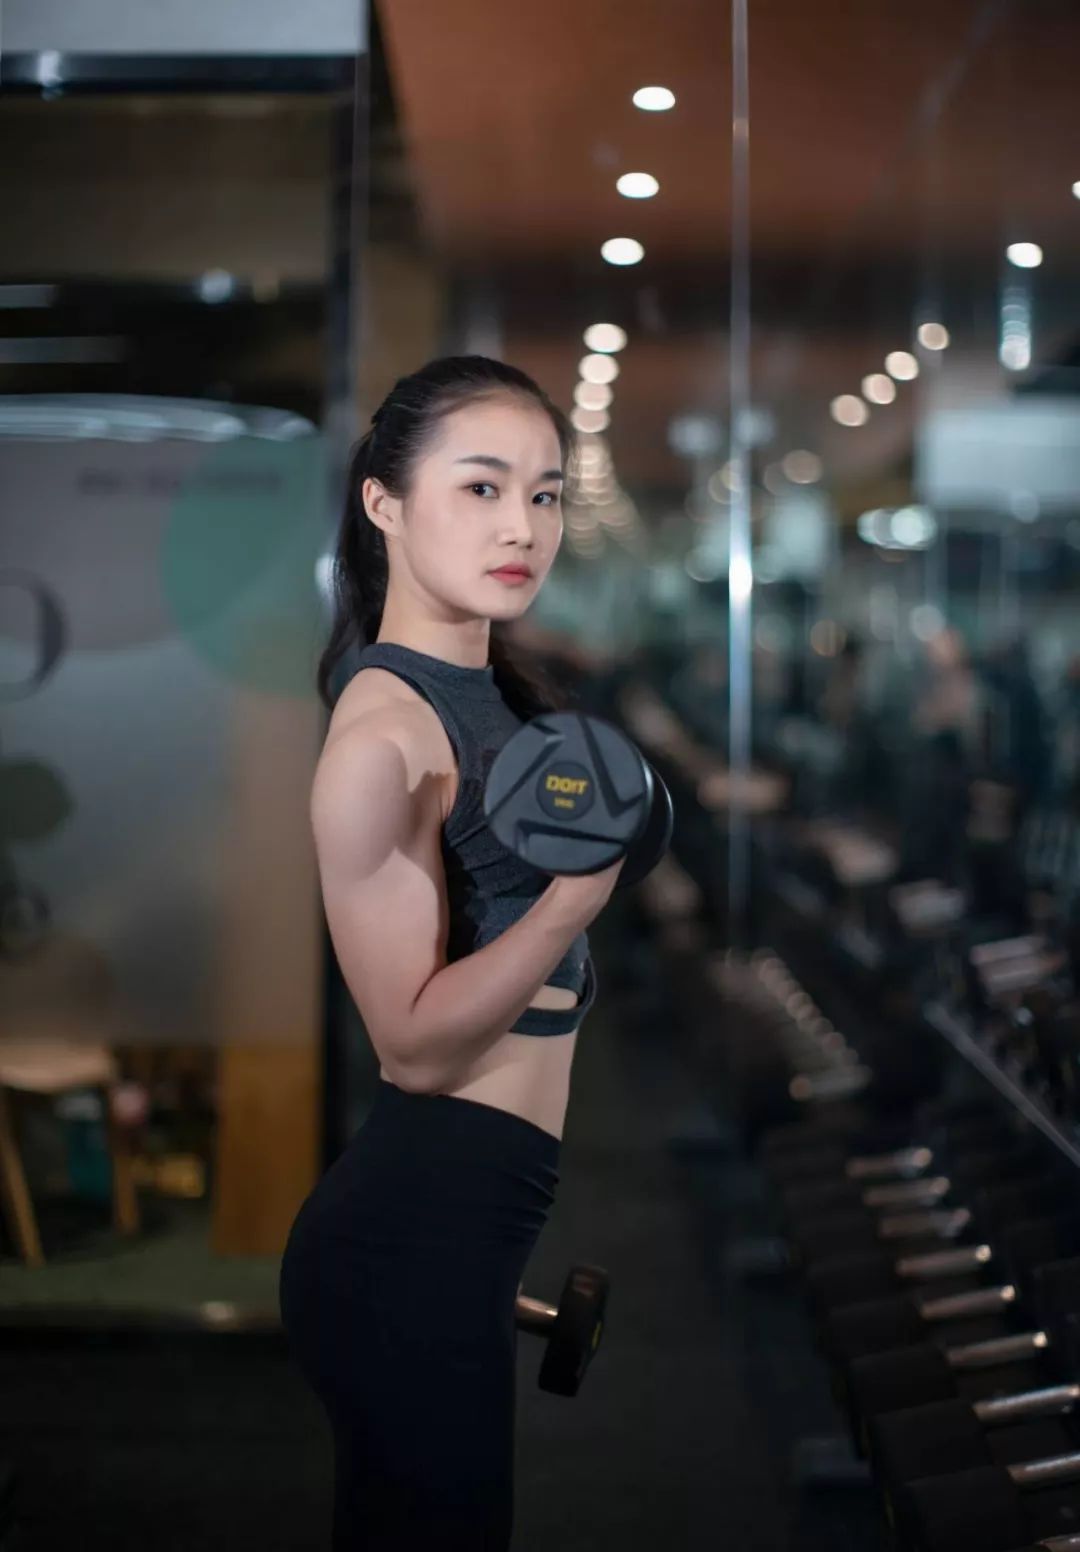 中国人坚持健身,身材能有多好?